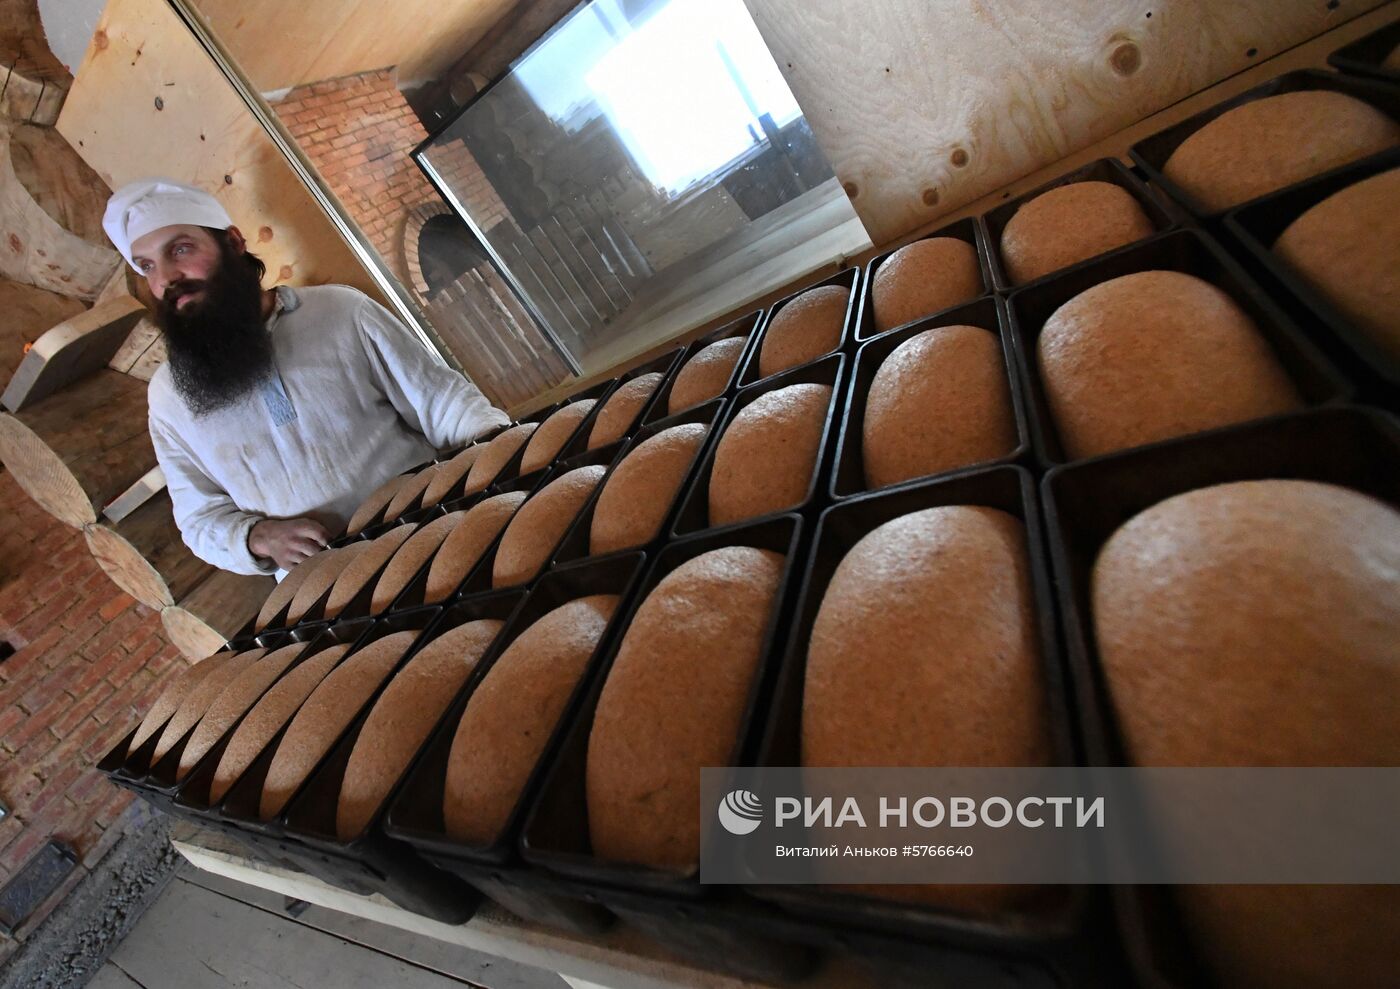 Пекарня "Хлеб-отец" в приморской тайге